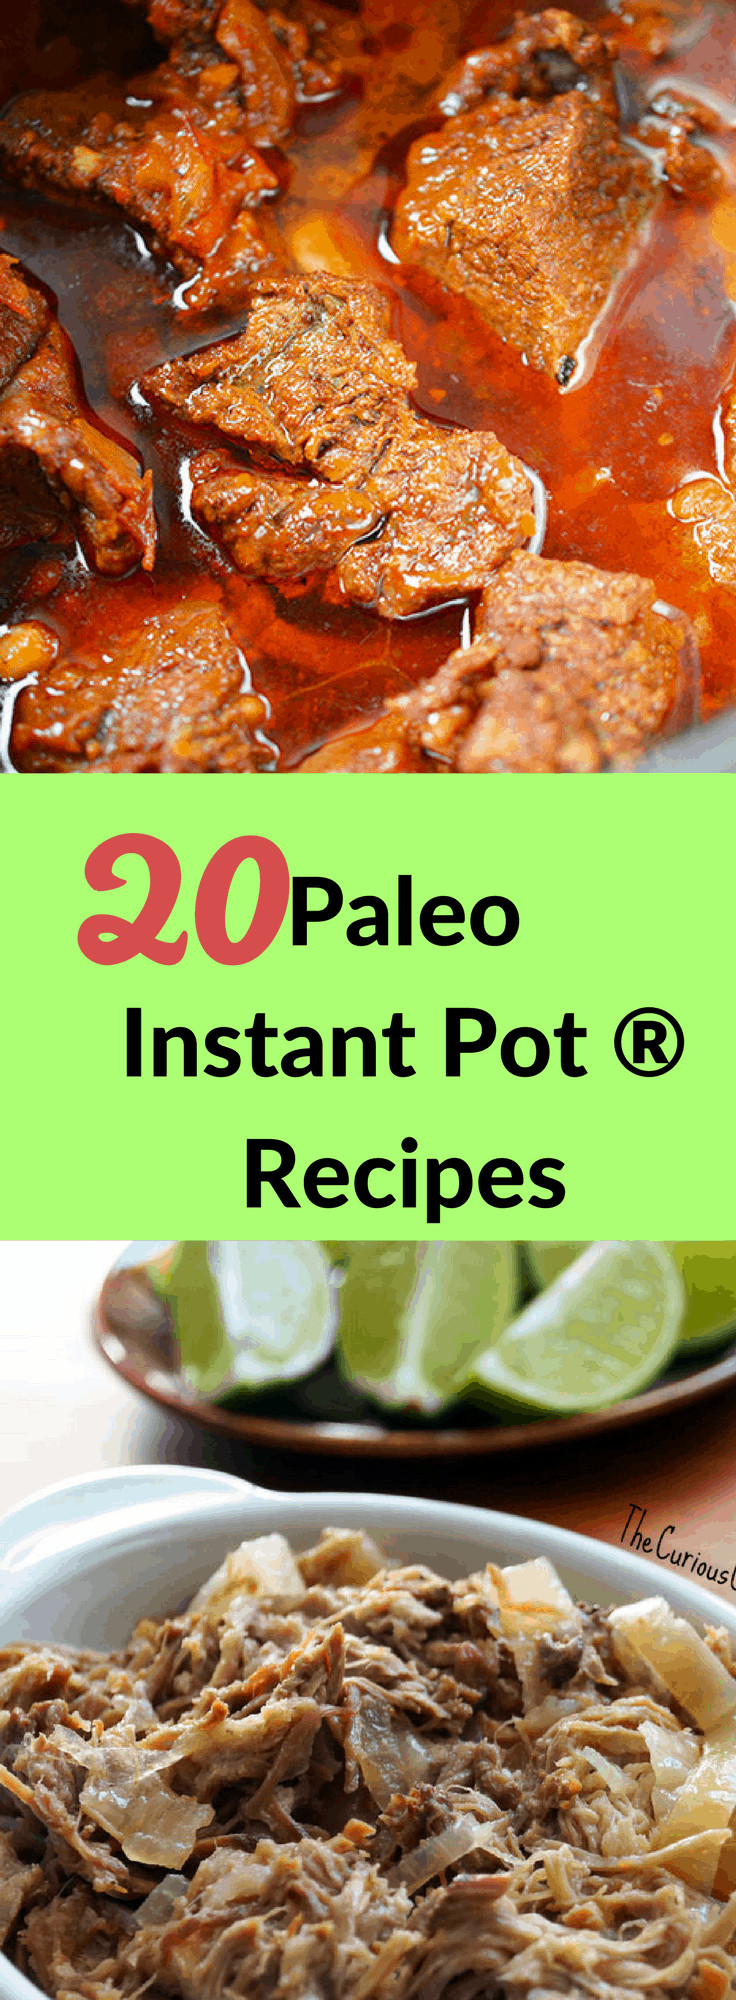 Paleo Instant Pot Recipes
 20 Paleo Instant Pot Recipes